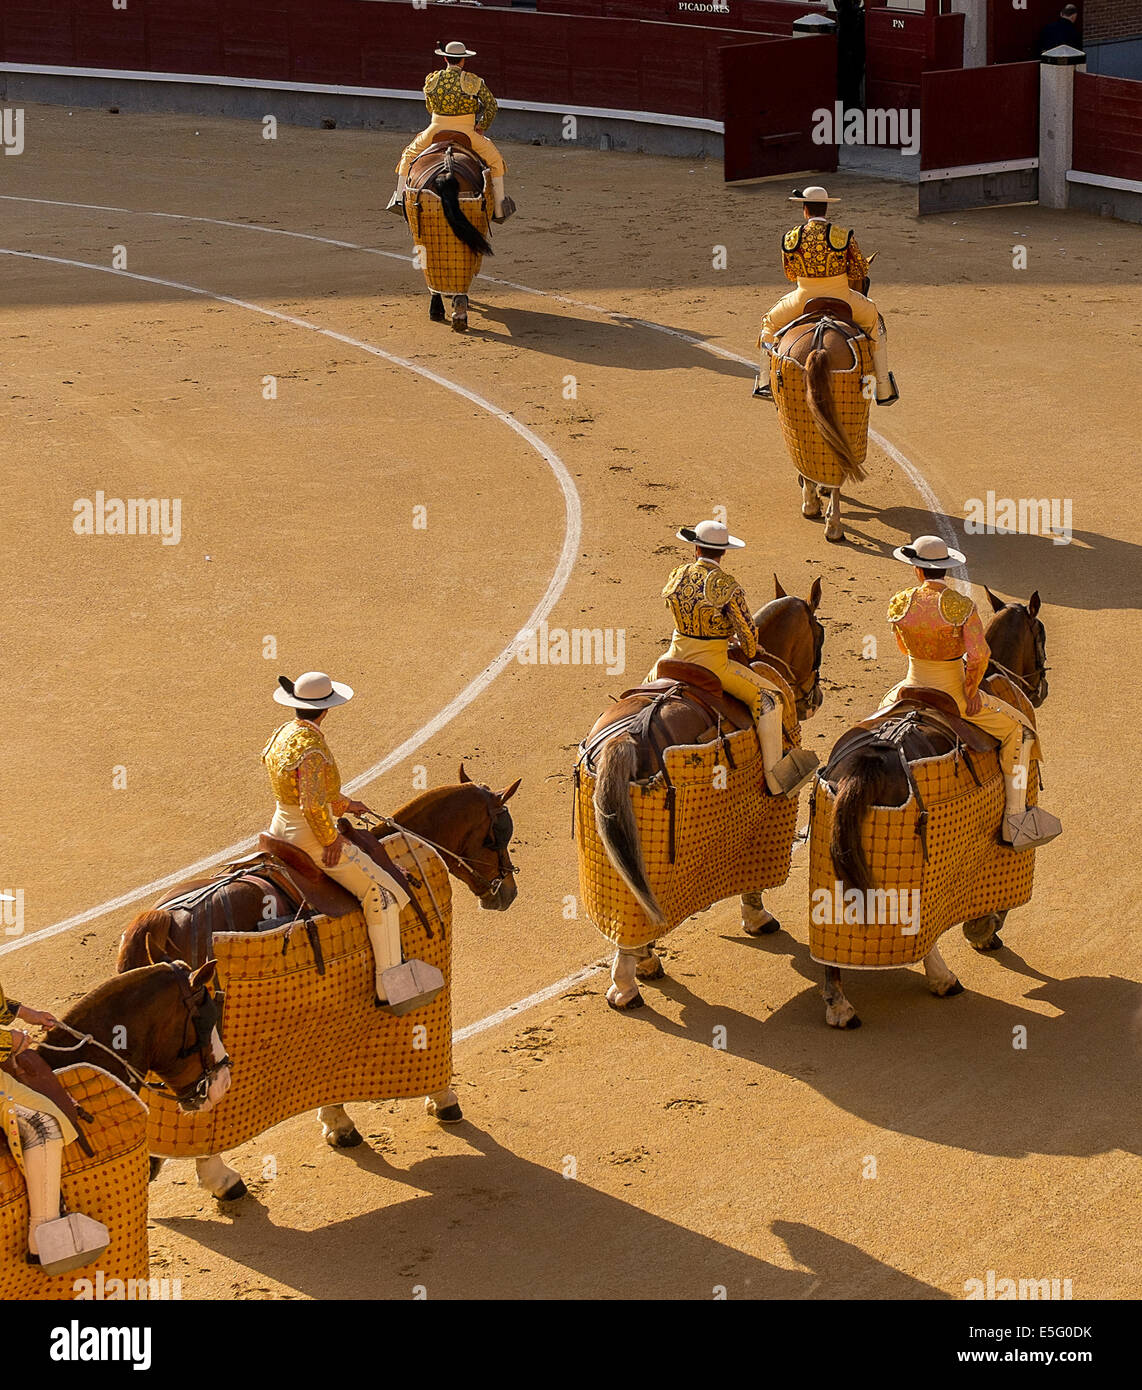 Cavaliers dans une corrida espagnole typique Banque D'Images